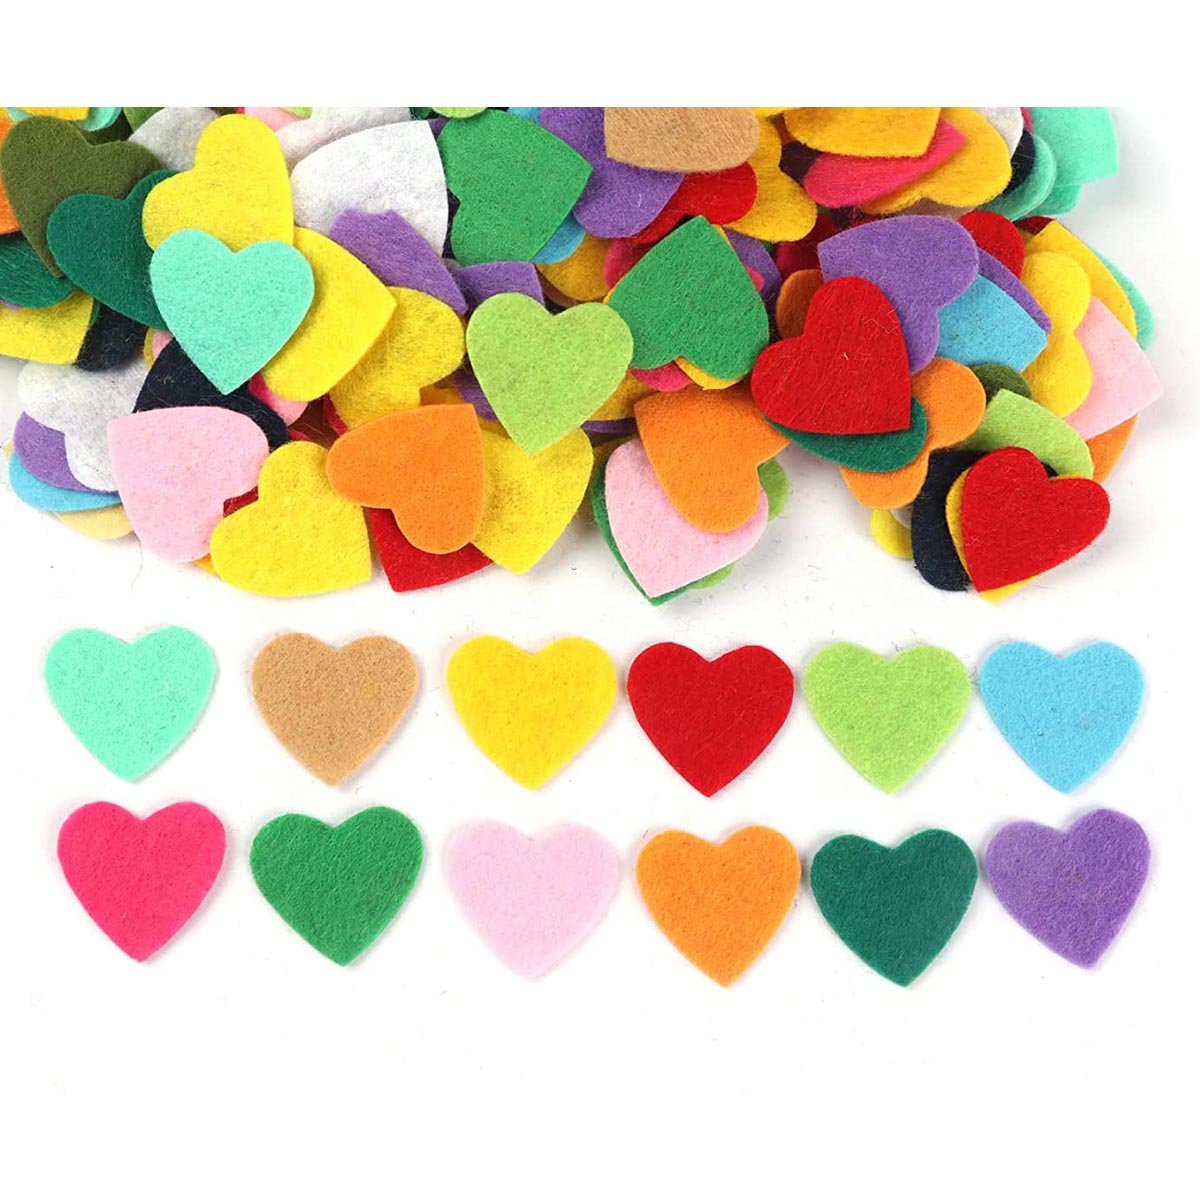 400pcs Felt Heart Fabric Embellishments,3/4 Inch Mix Color